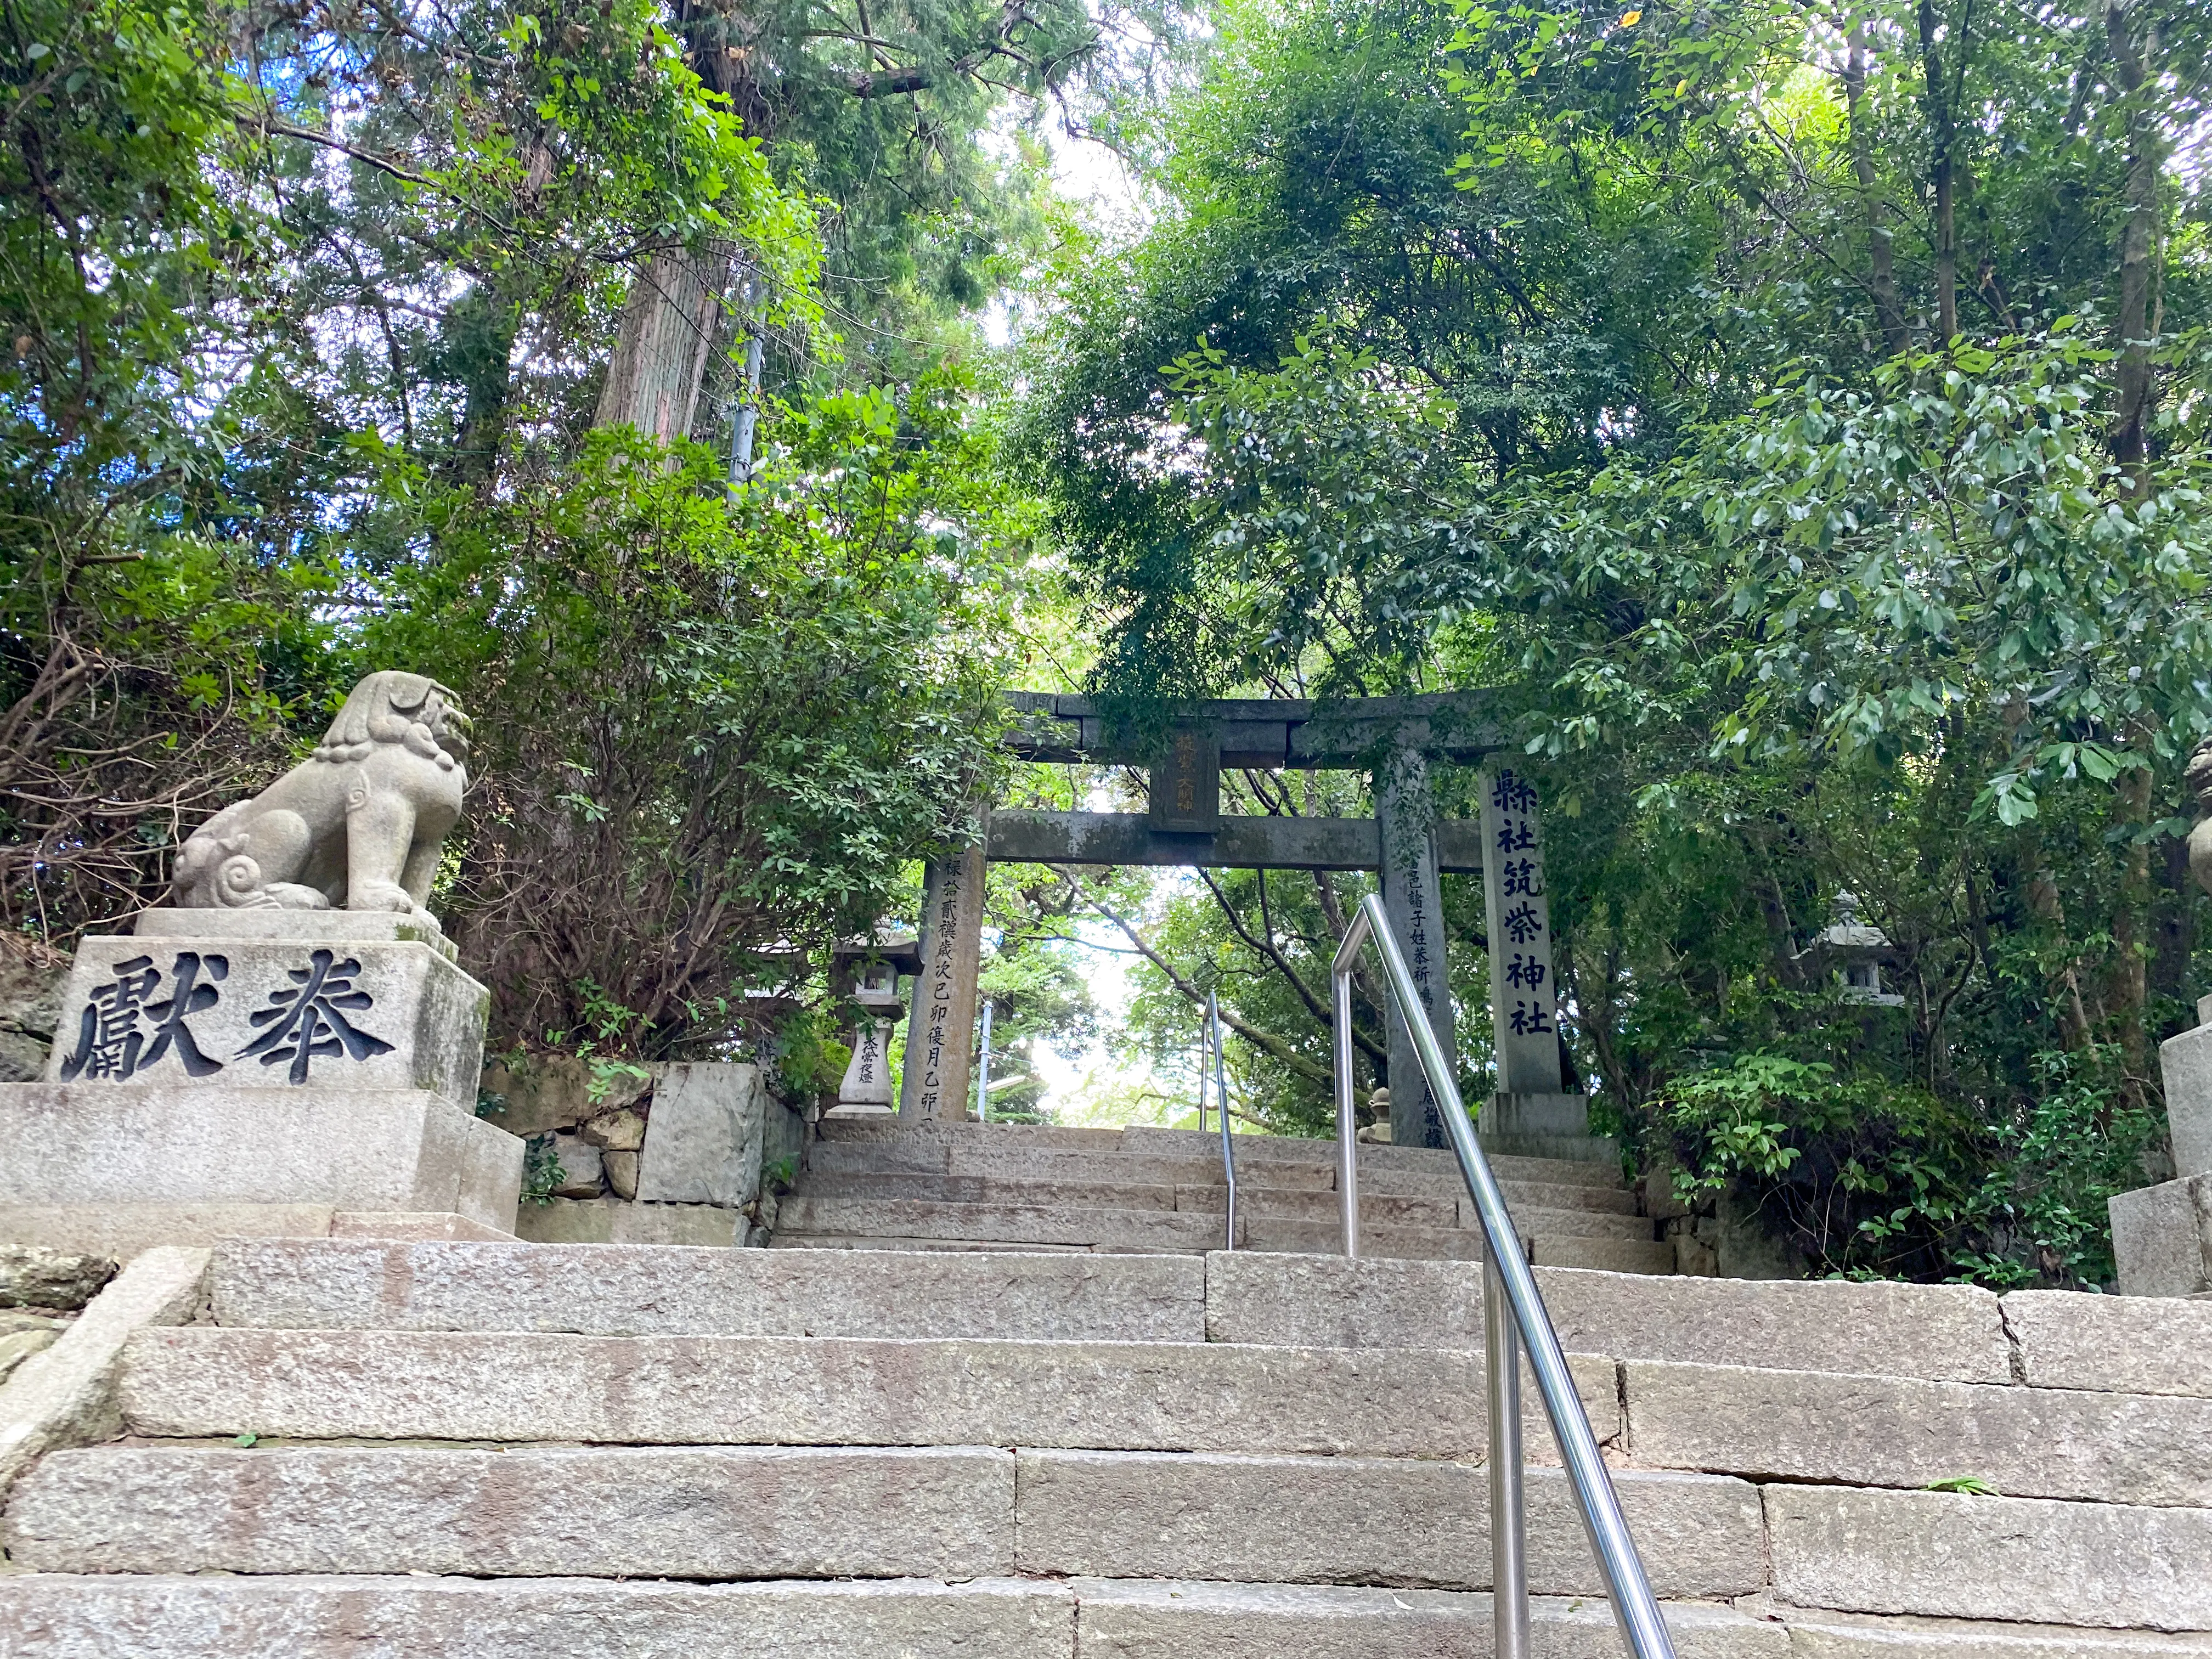 「筑紫神社」狛犬がお出迎え